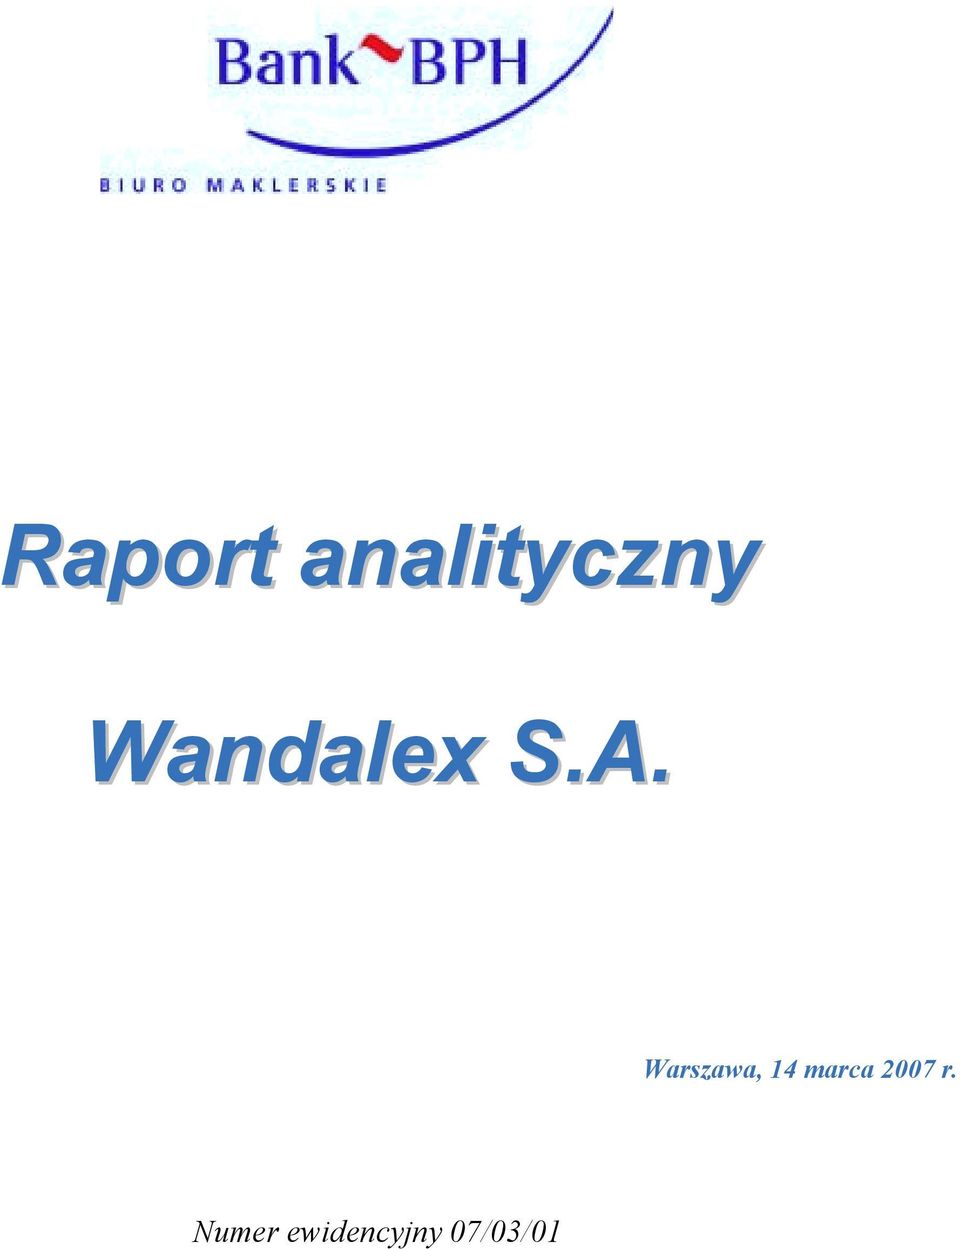 Wandalex S.A.